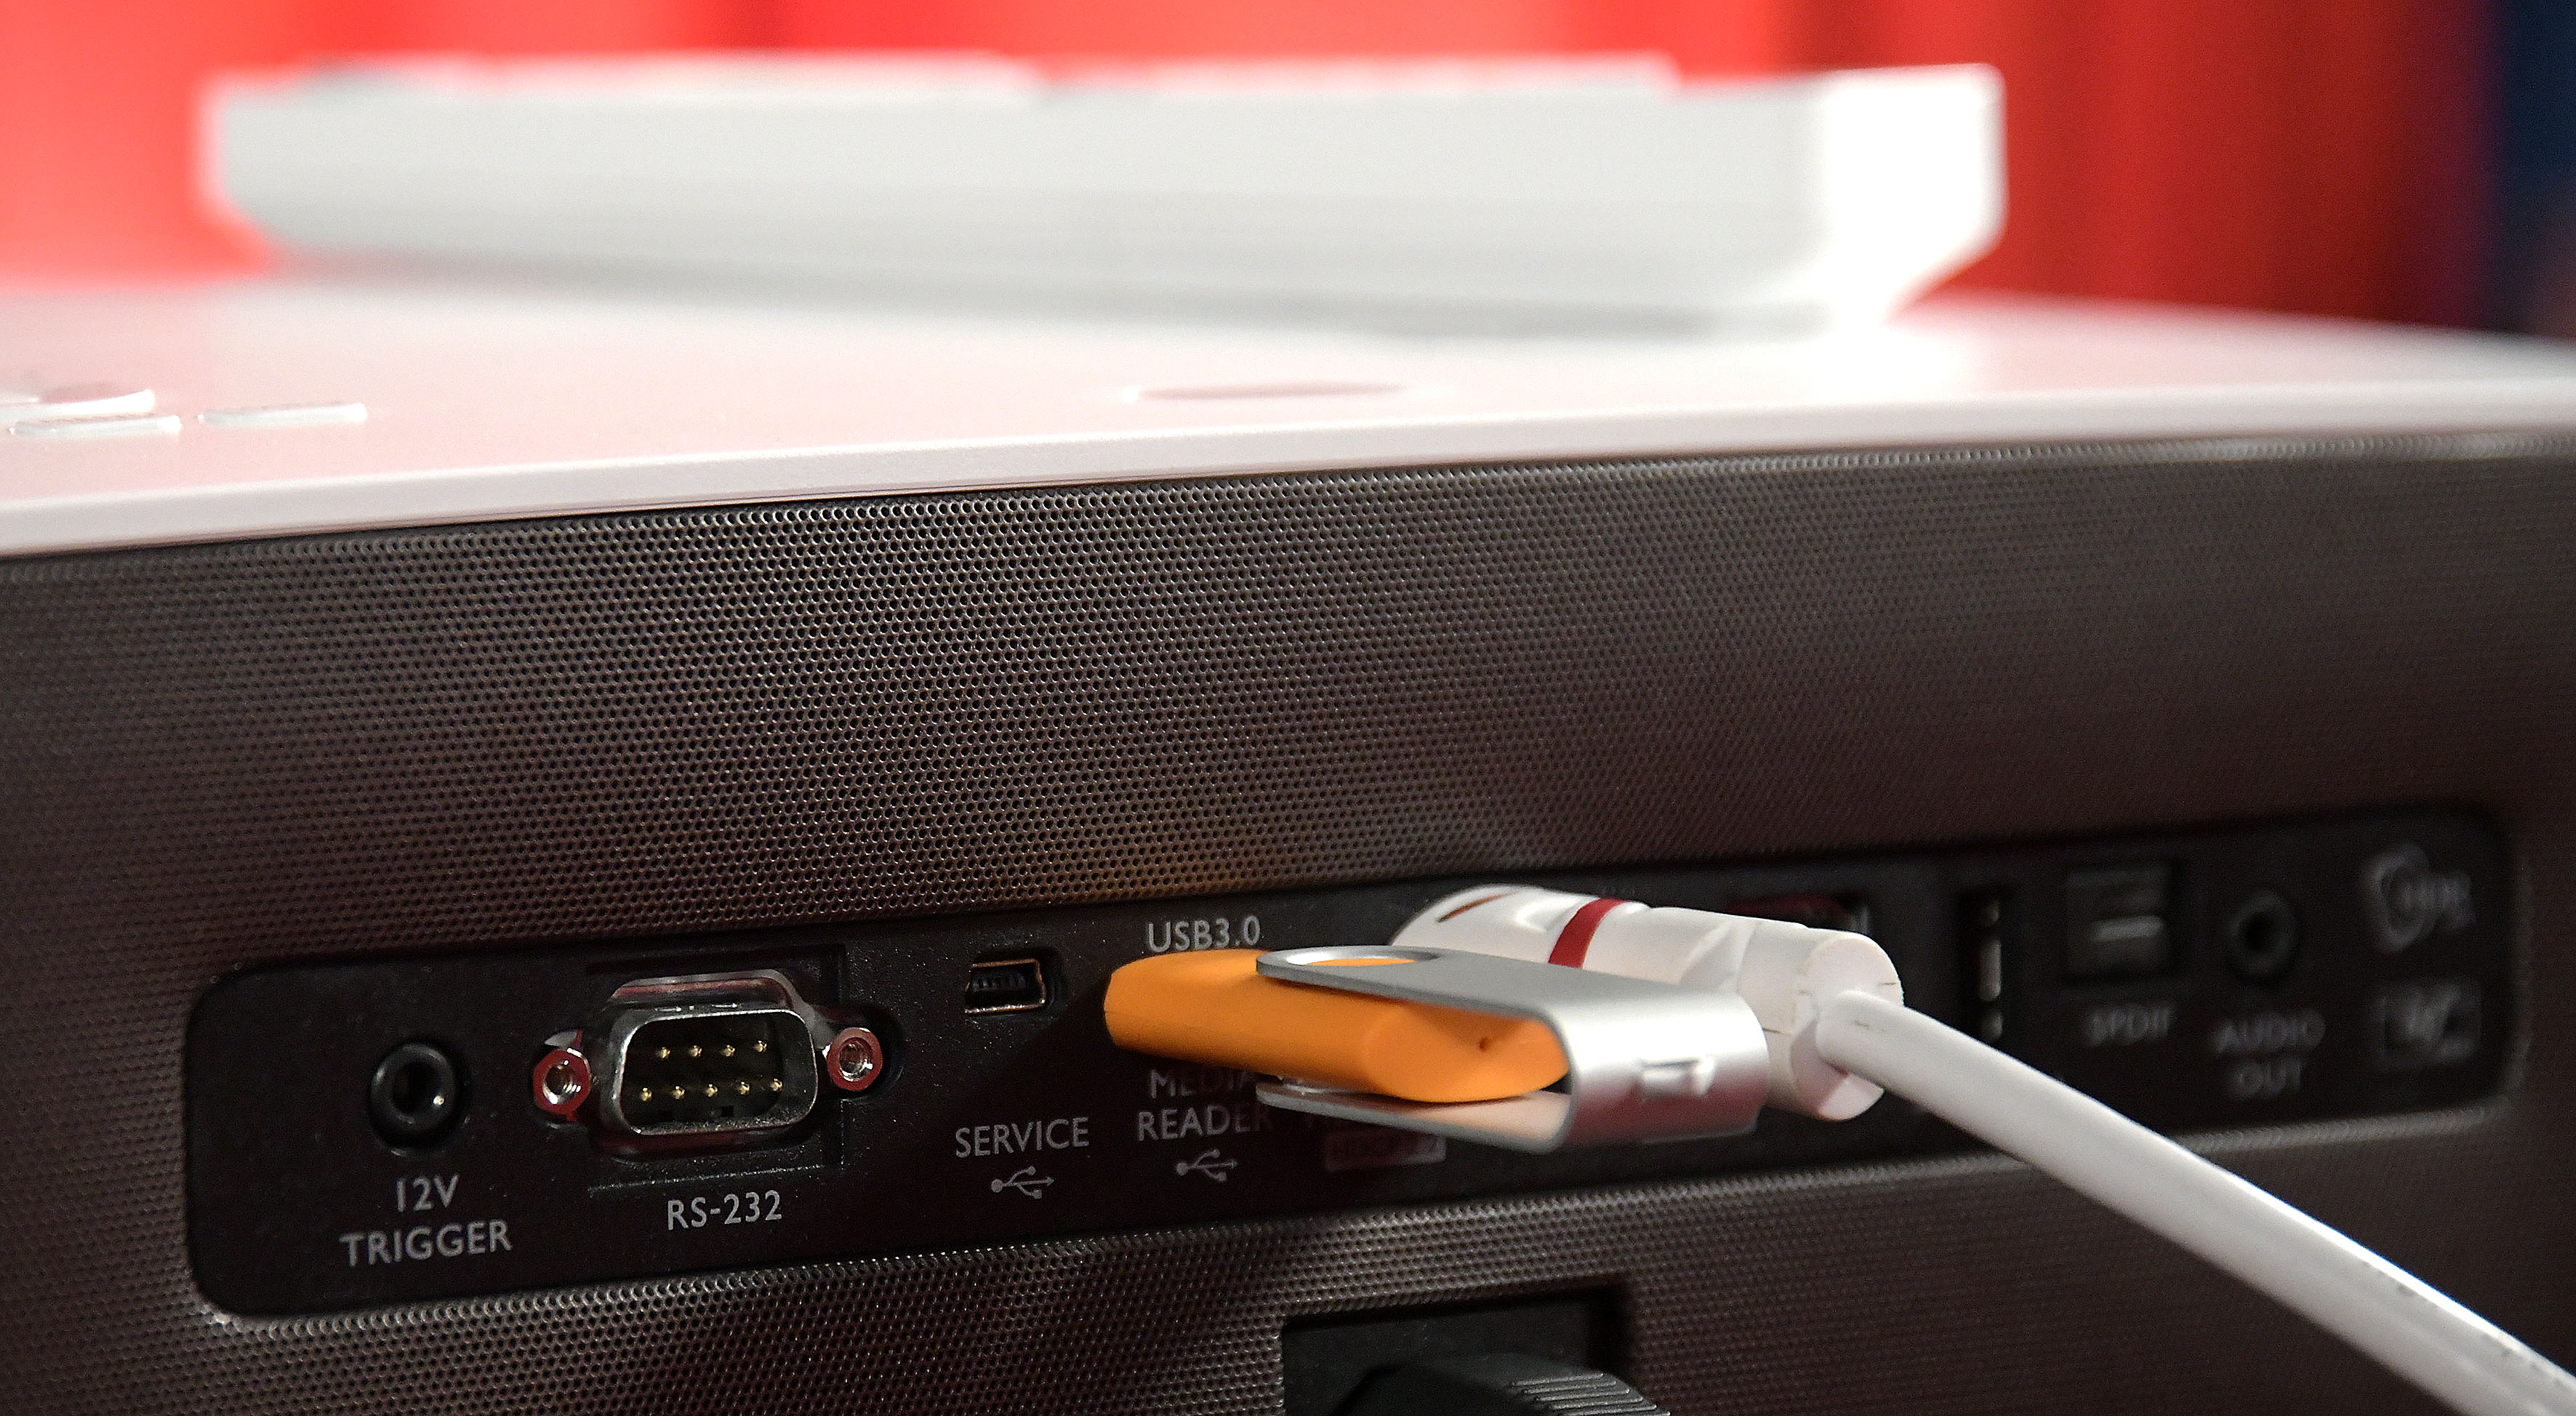 Foto: Michael B. Rehders Neben dem AV-Receiver können ein USB-Stick und eine Spielekonsole verbunden werden. Ermöglichen tun das gleich zwei HDMI- und ein USB-Eingang.